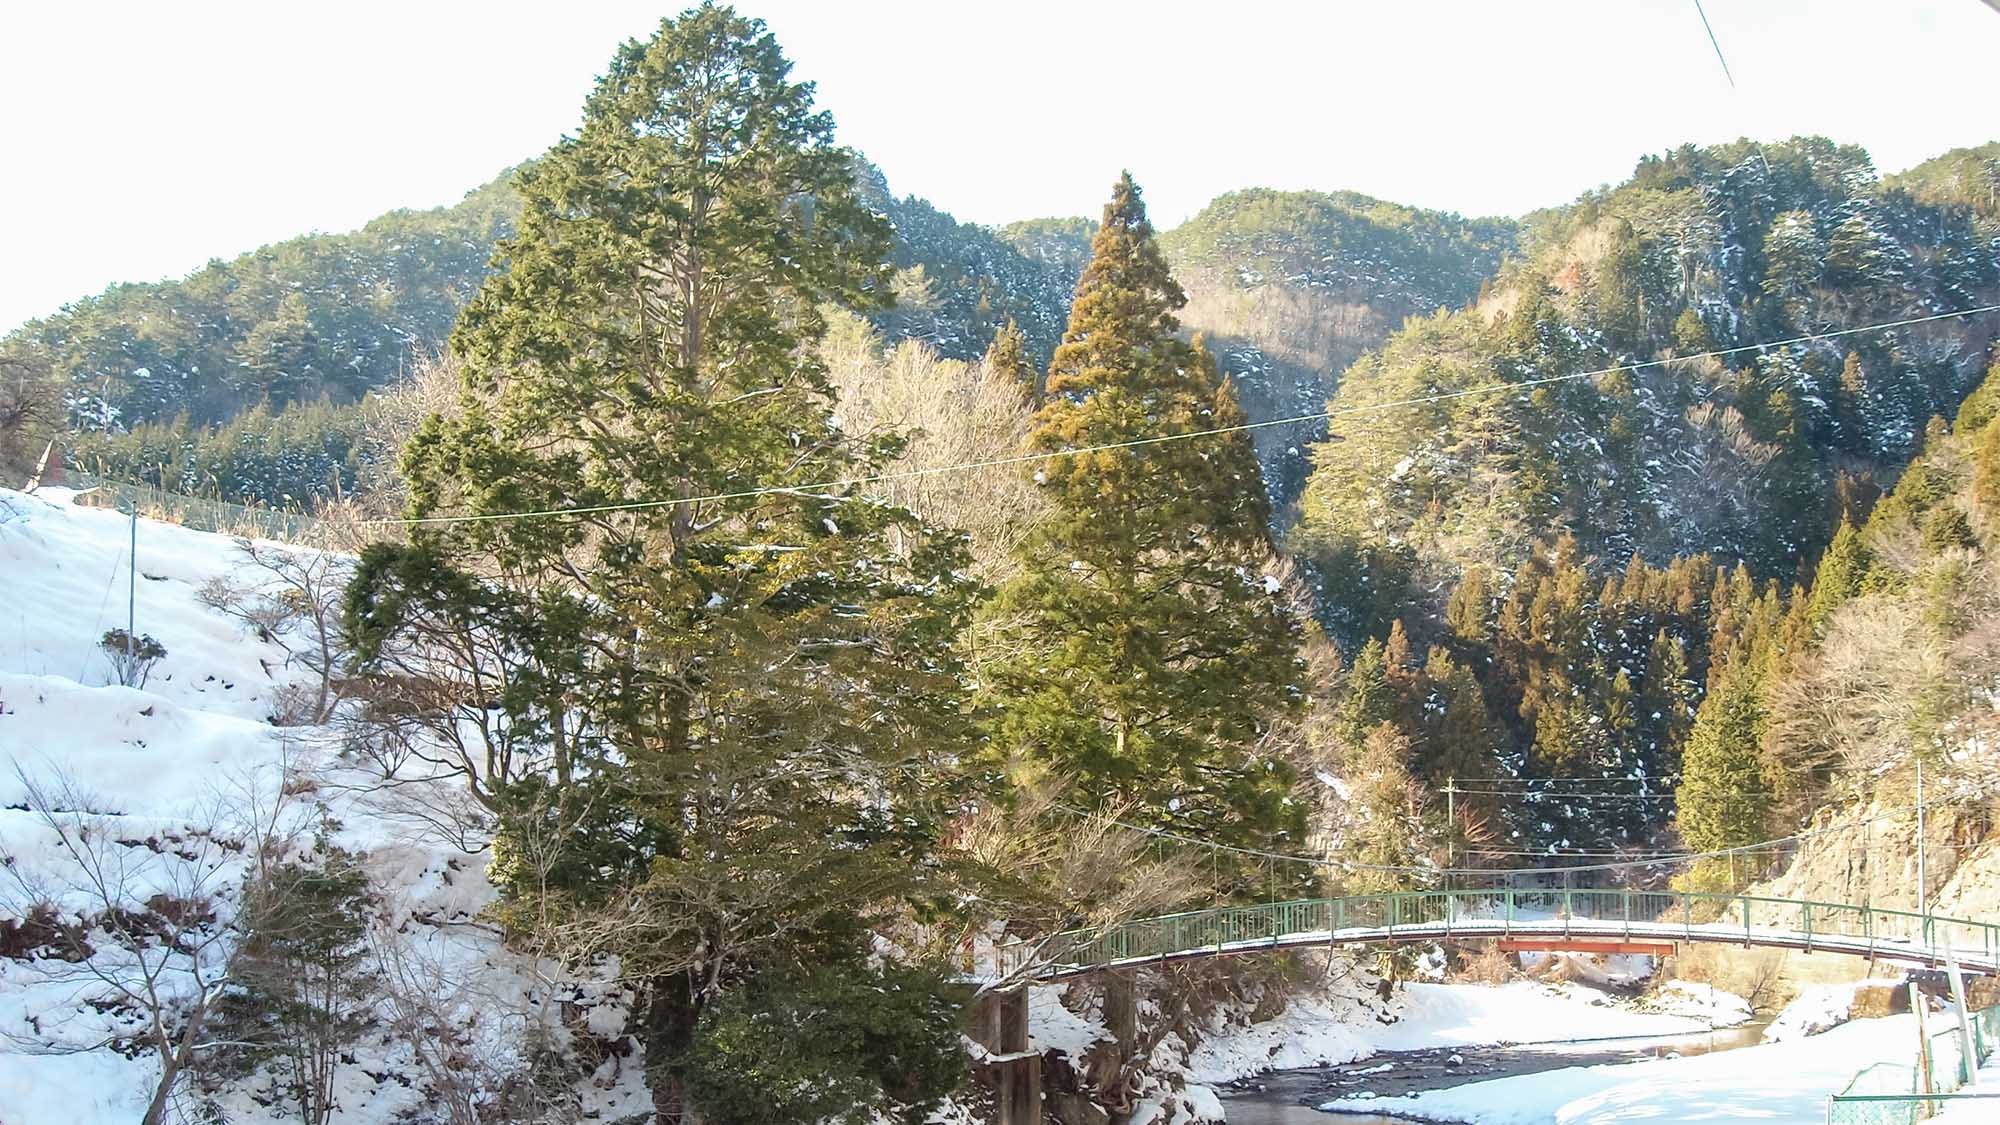 ・【風景】ホテル前に架かる長寿橋と雪景色に包まれる木々